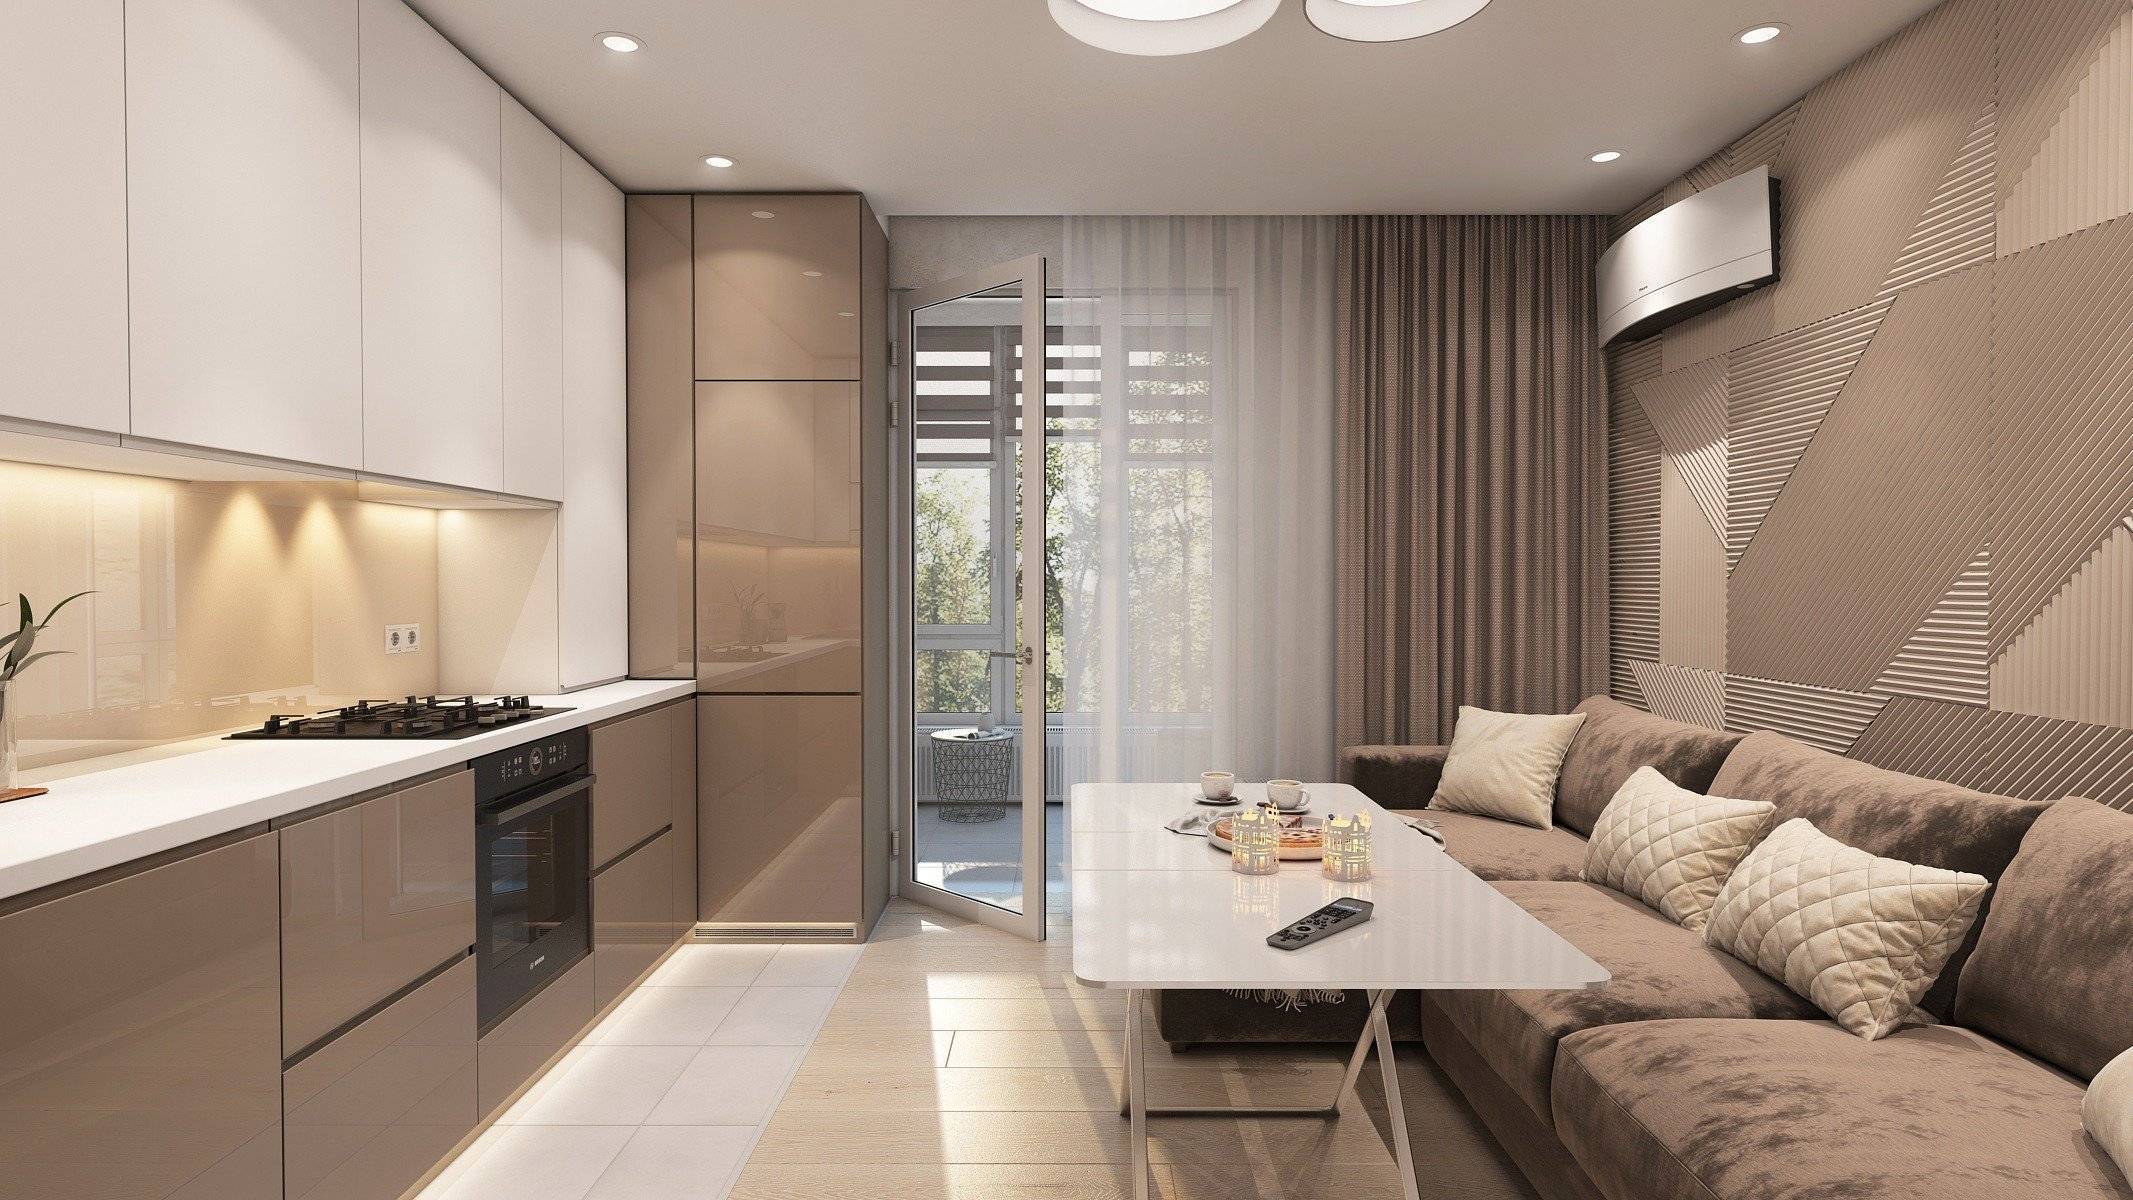 Кухня 11 кв. м: идеи дизайна, фото интерьера с диваном, с выходом на балкон, выбор гарнитура, планировка и удобные решения